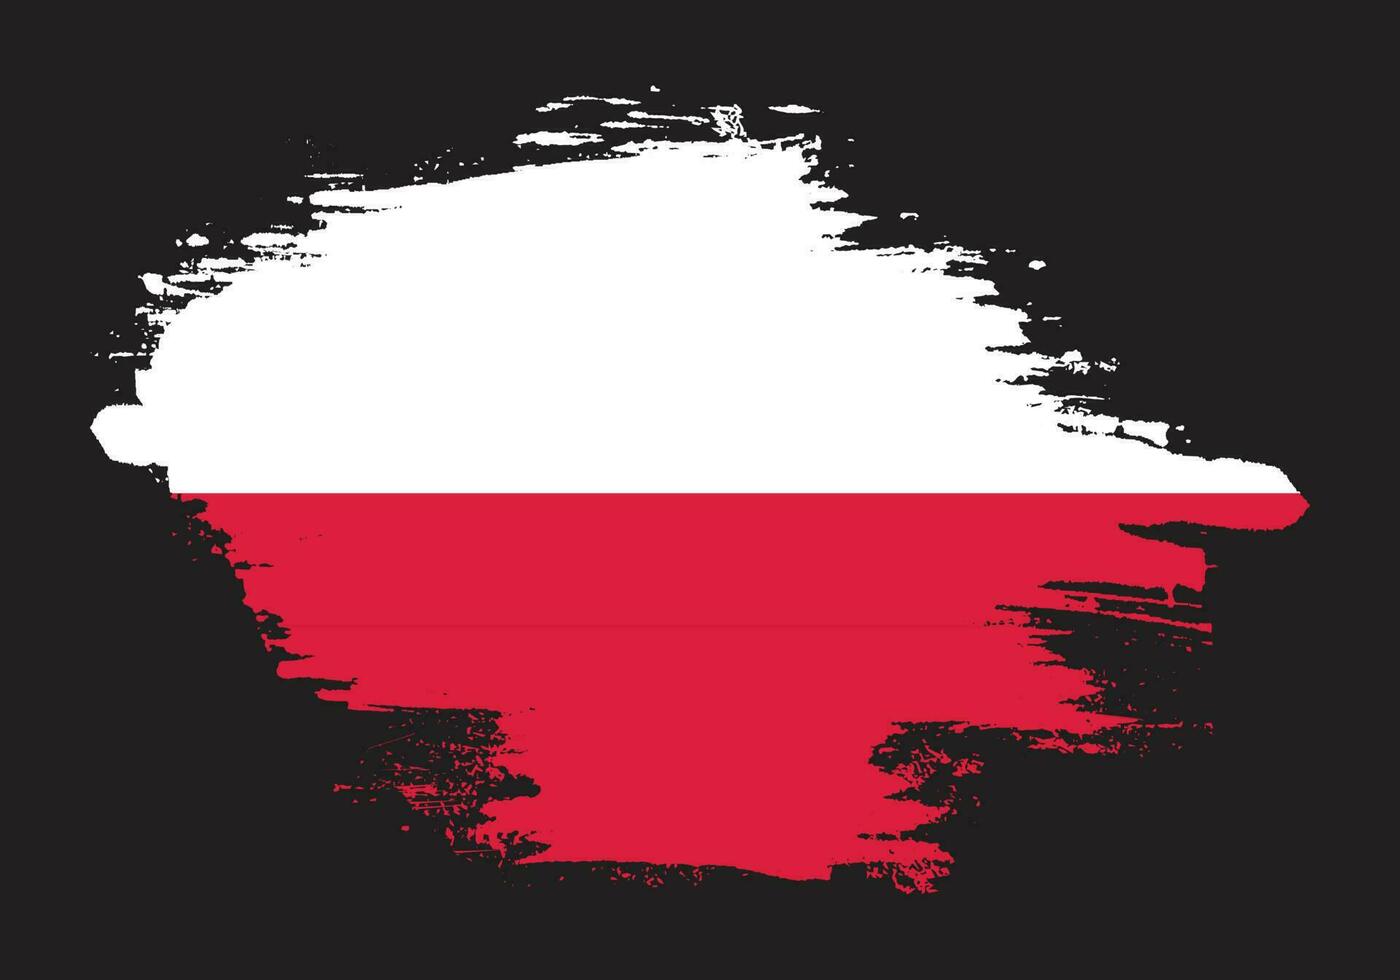 Brush frame Poland flag vector